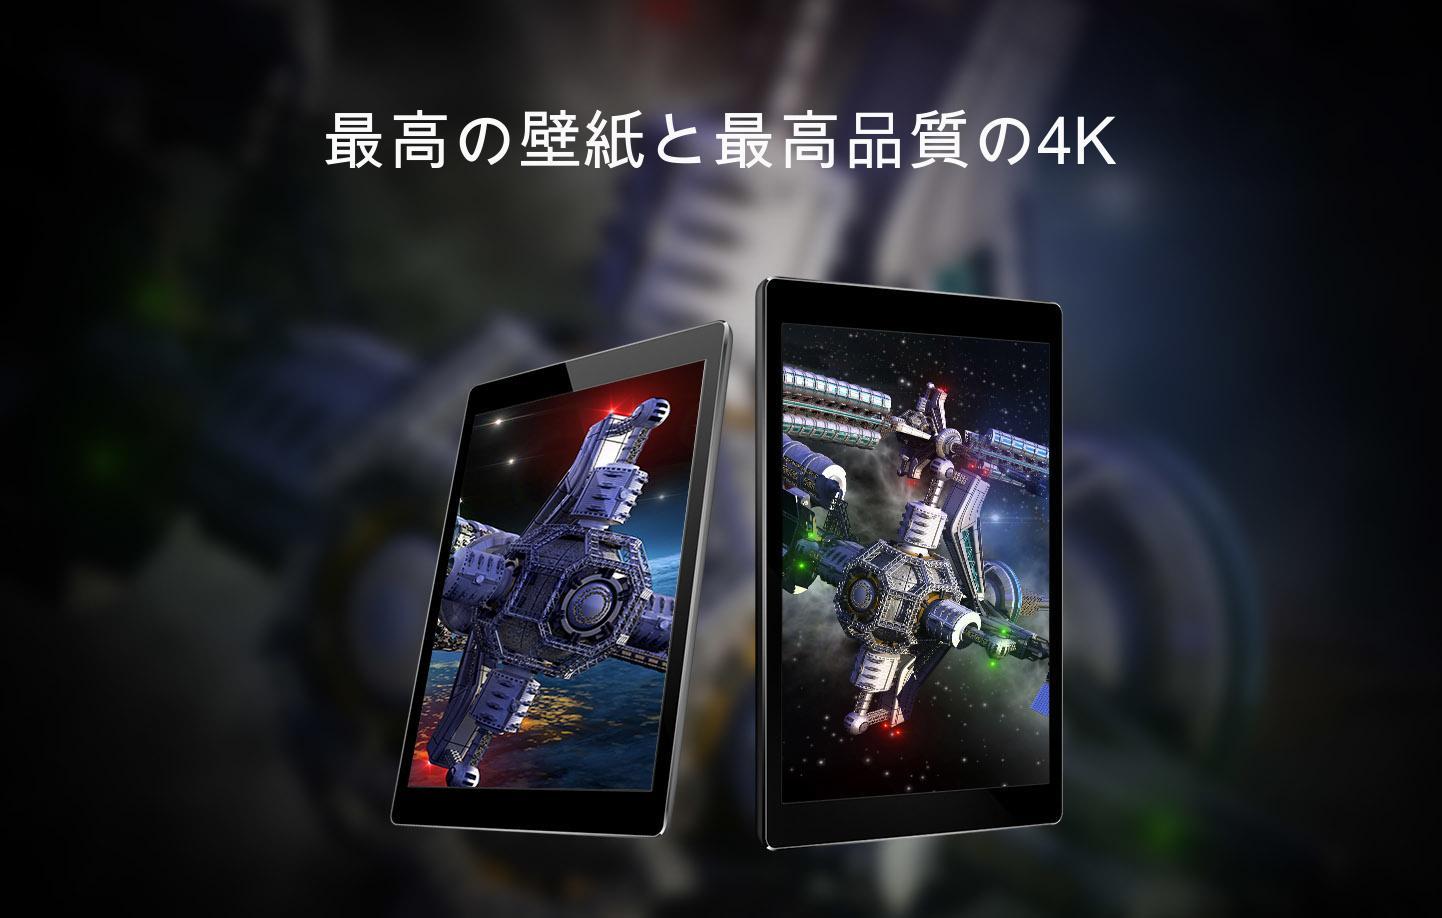 Android 用の 宇宙船の壁紙 Apk をダウンロード